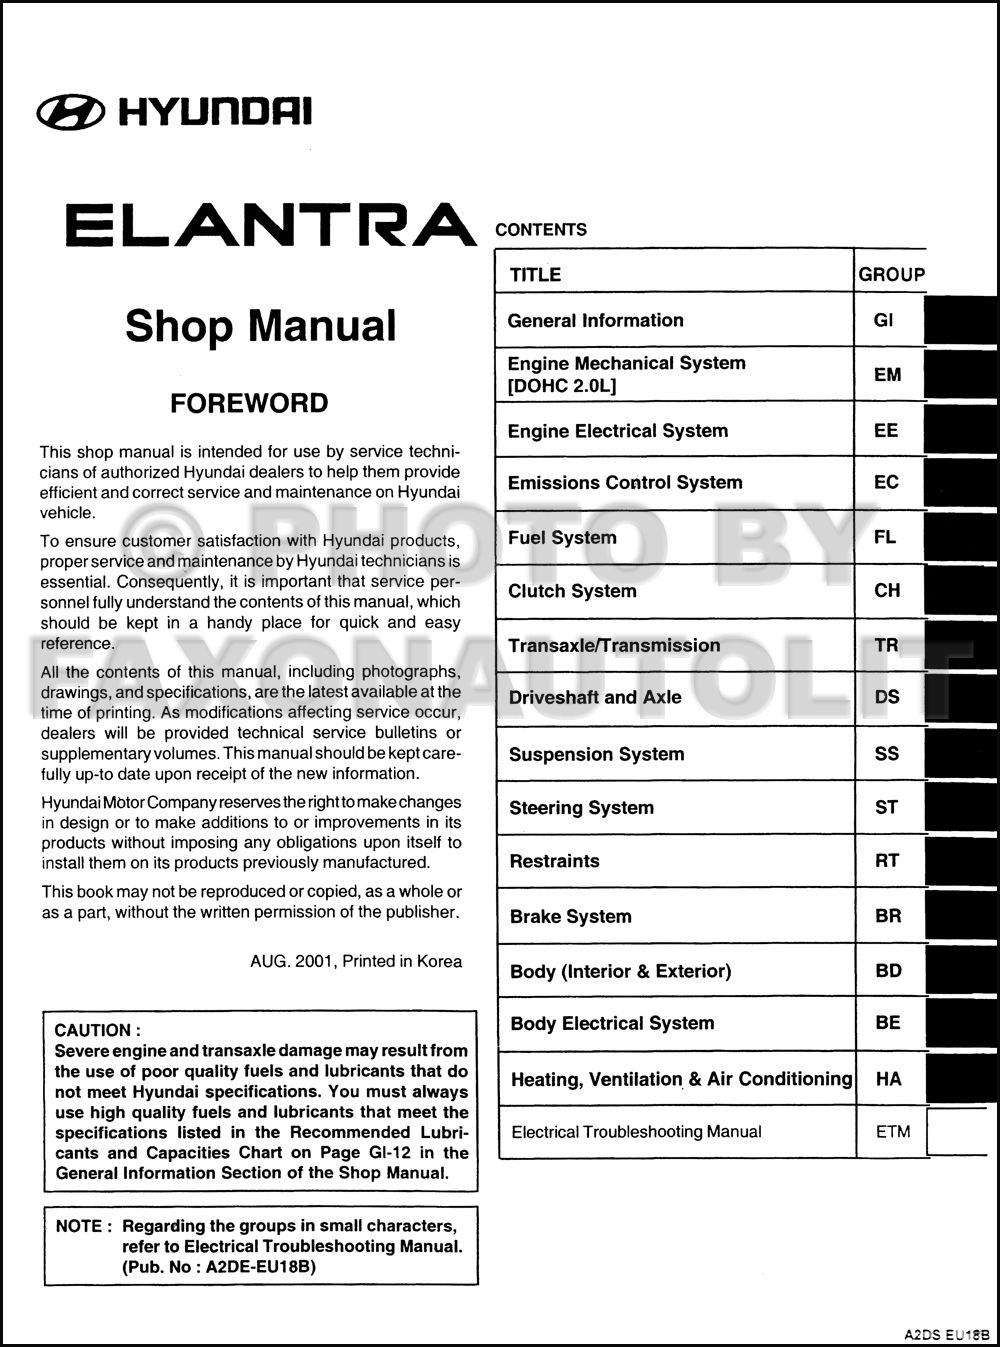 hyundai elantra repair manual free download